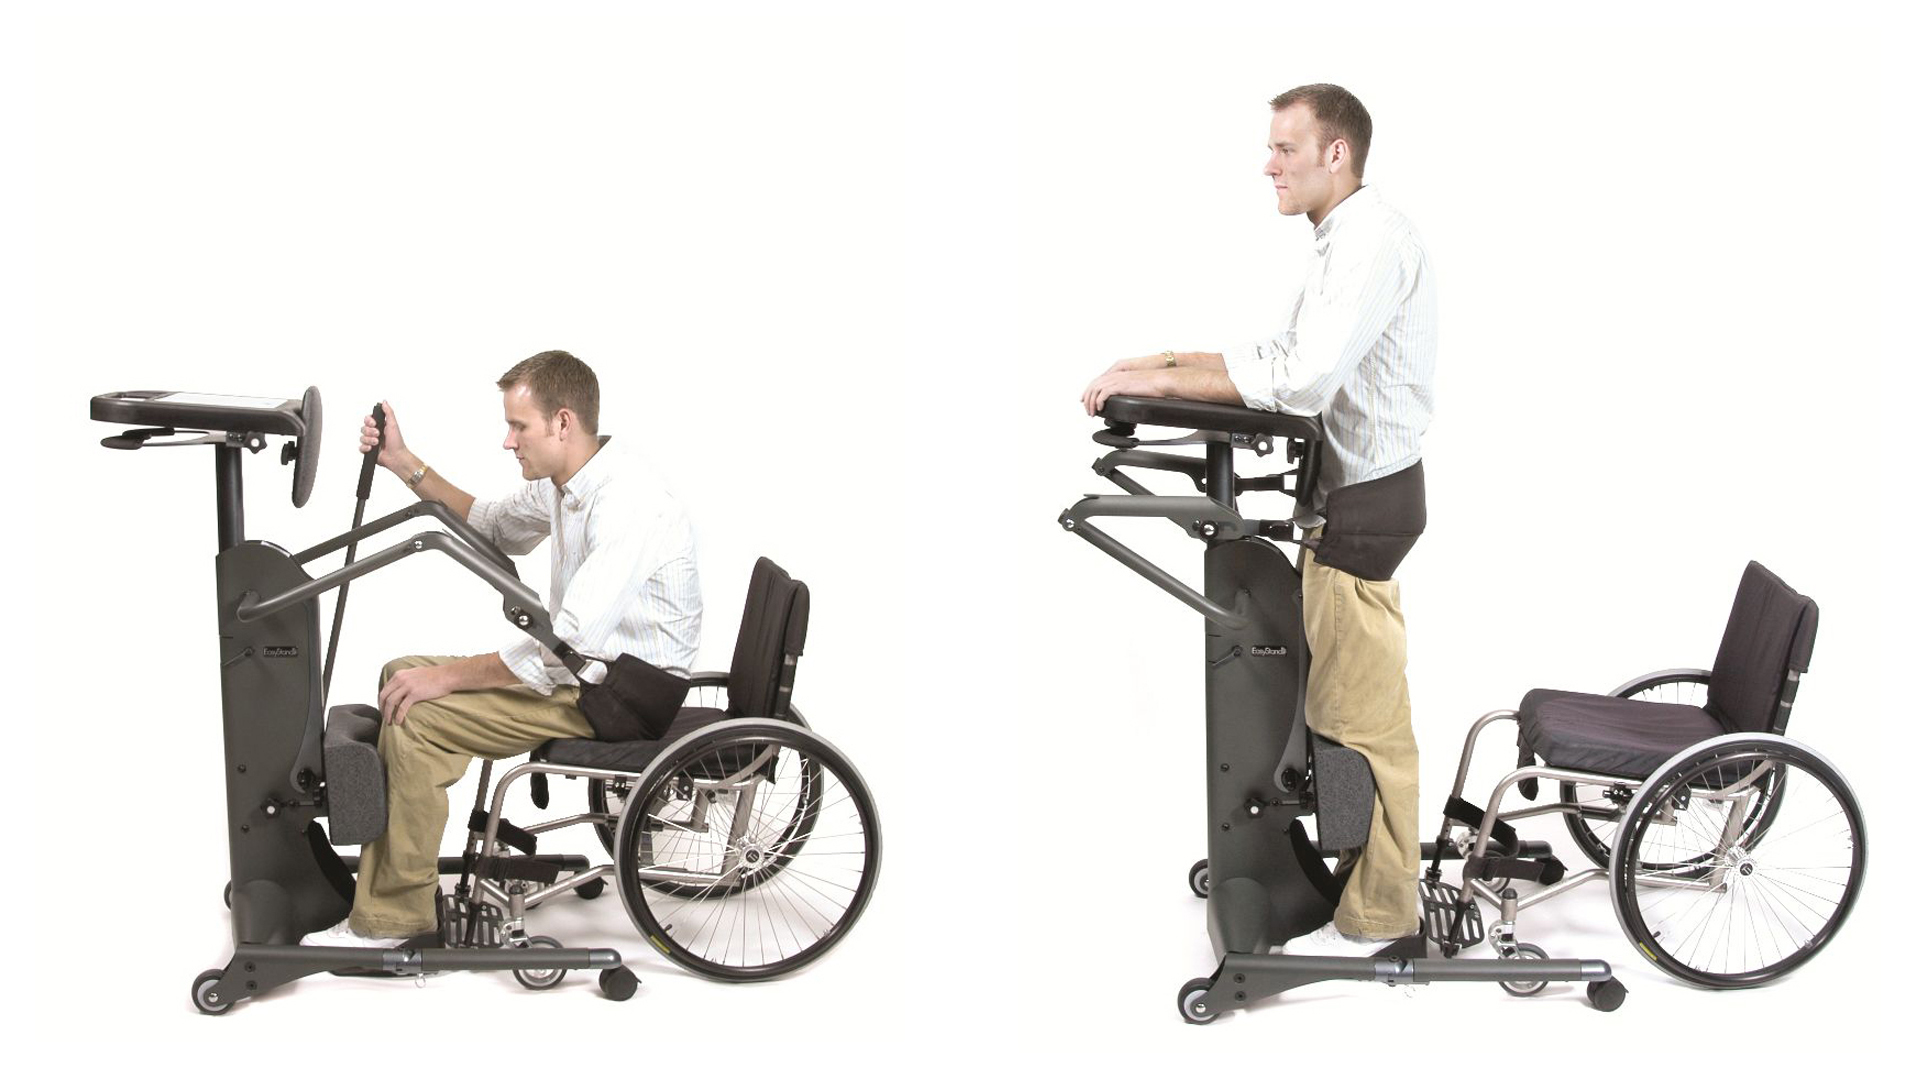 Aufrichten mit Hilfe des Stehtrainers vom Rollstuhl in drei Bildsequenzen.